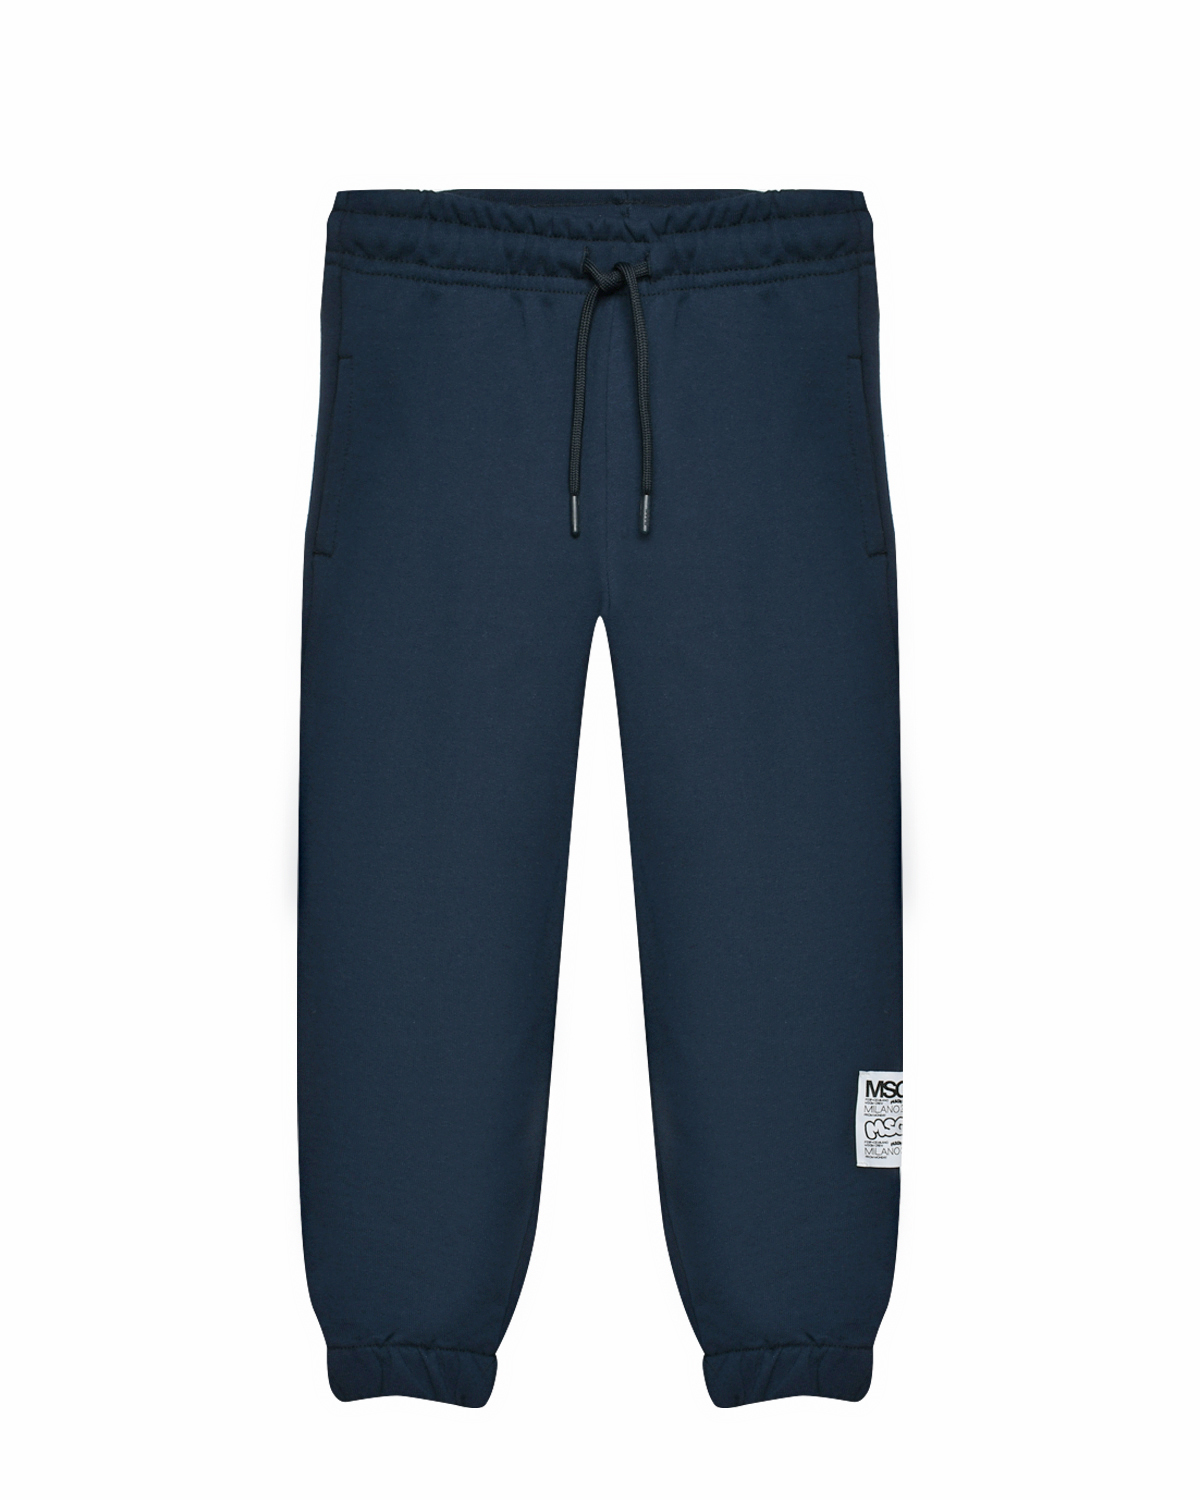 Спортивные брюки с поясом на кулиске, темно-синие MSGM, размер 140, цвет синий